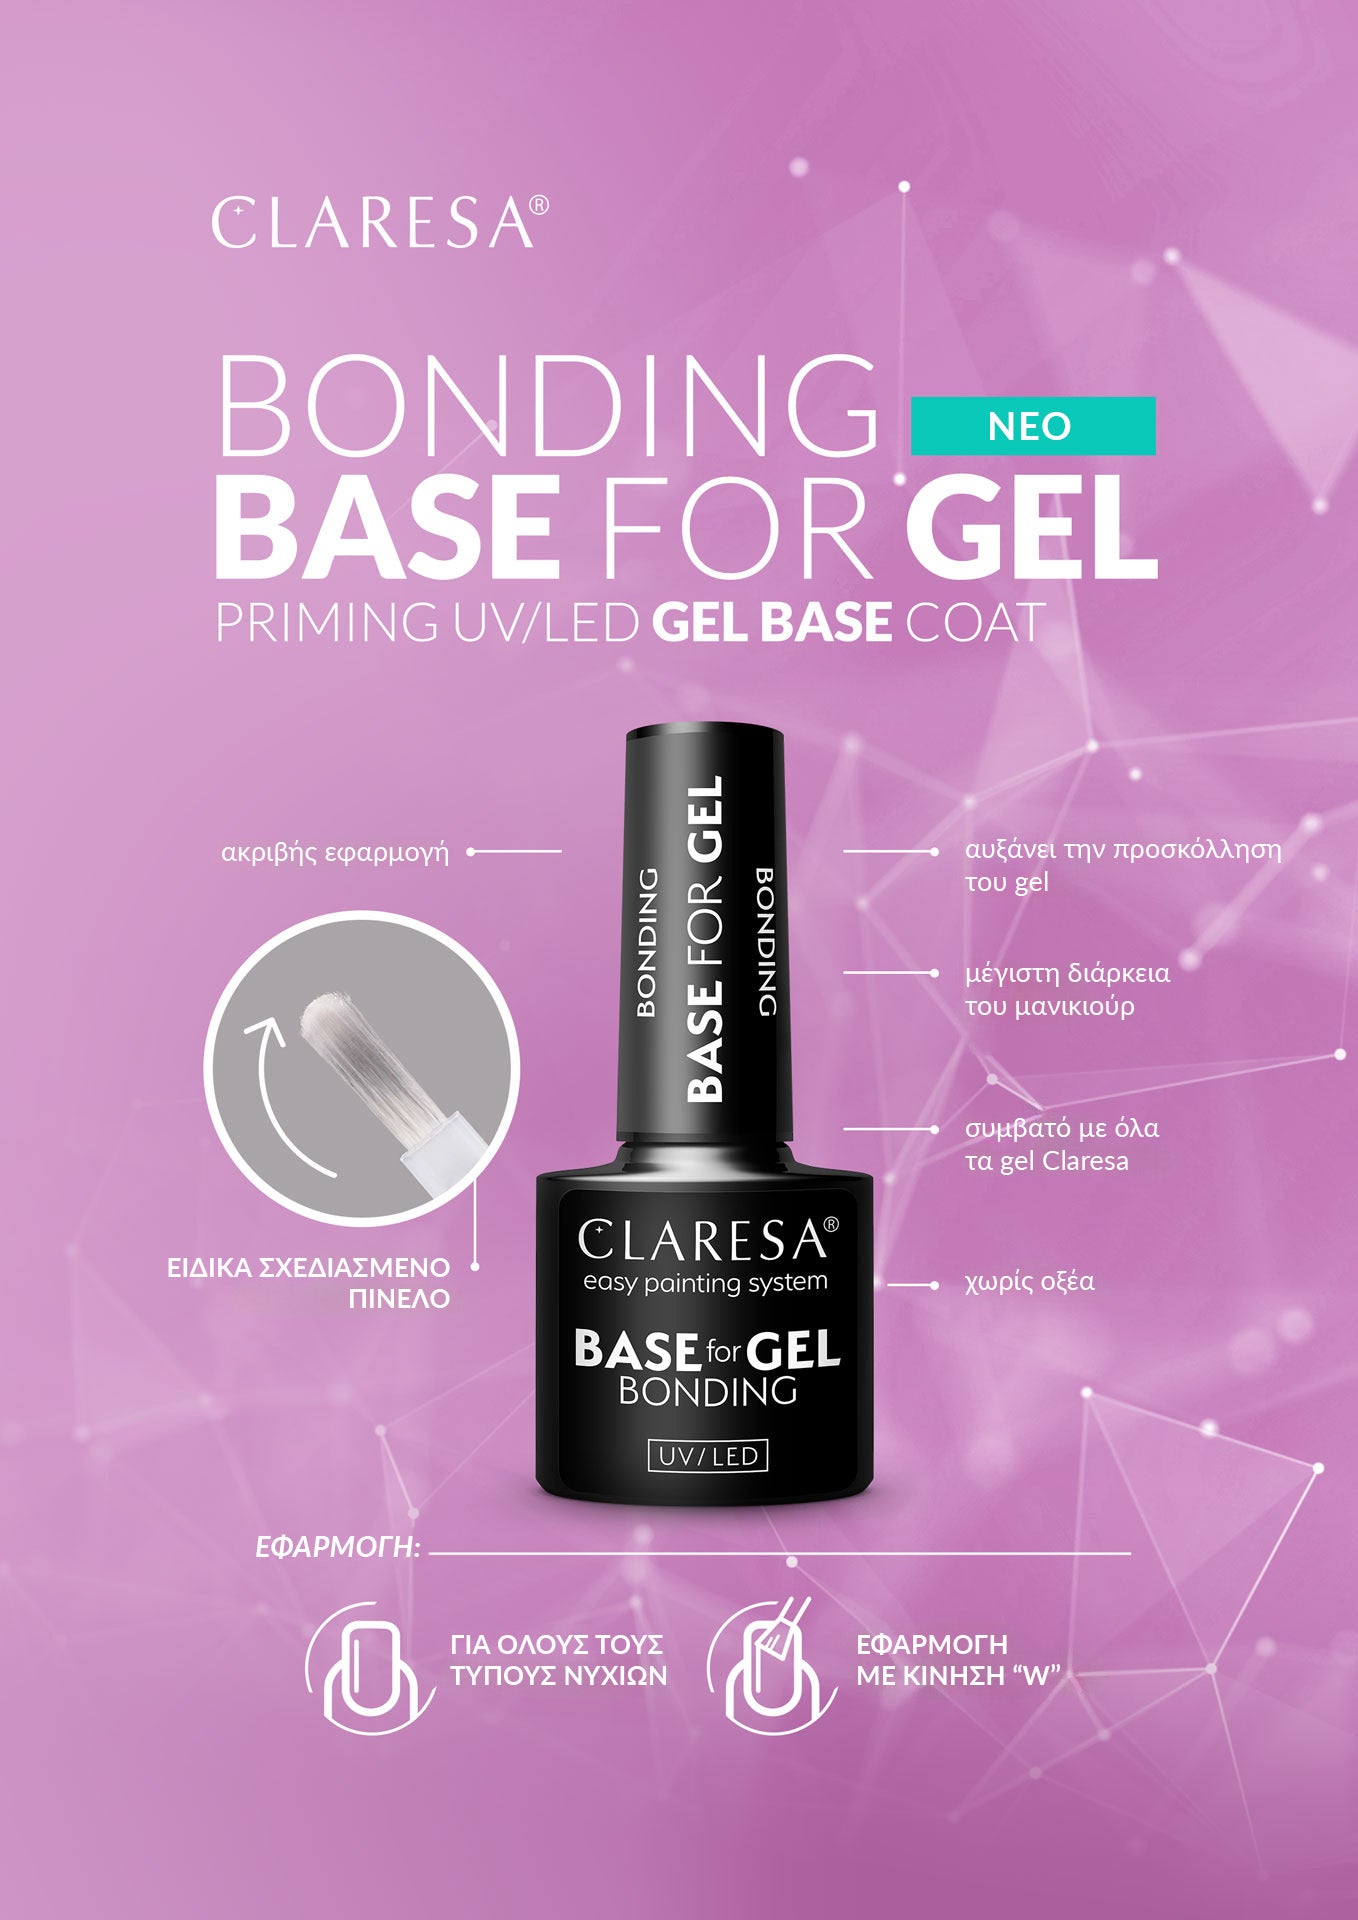 Claresa-bonding-base-for-gel.jpg